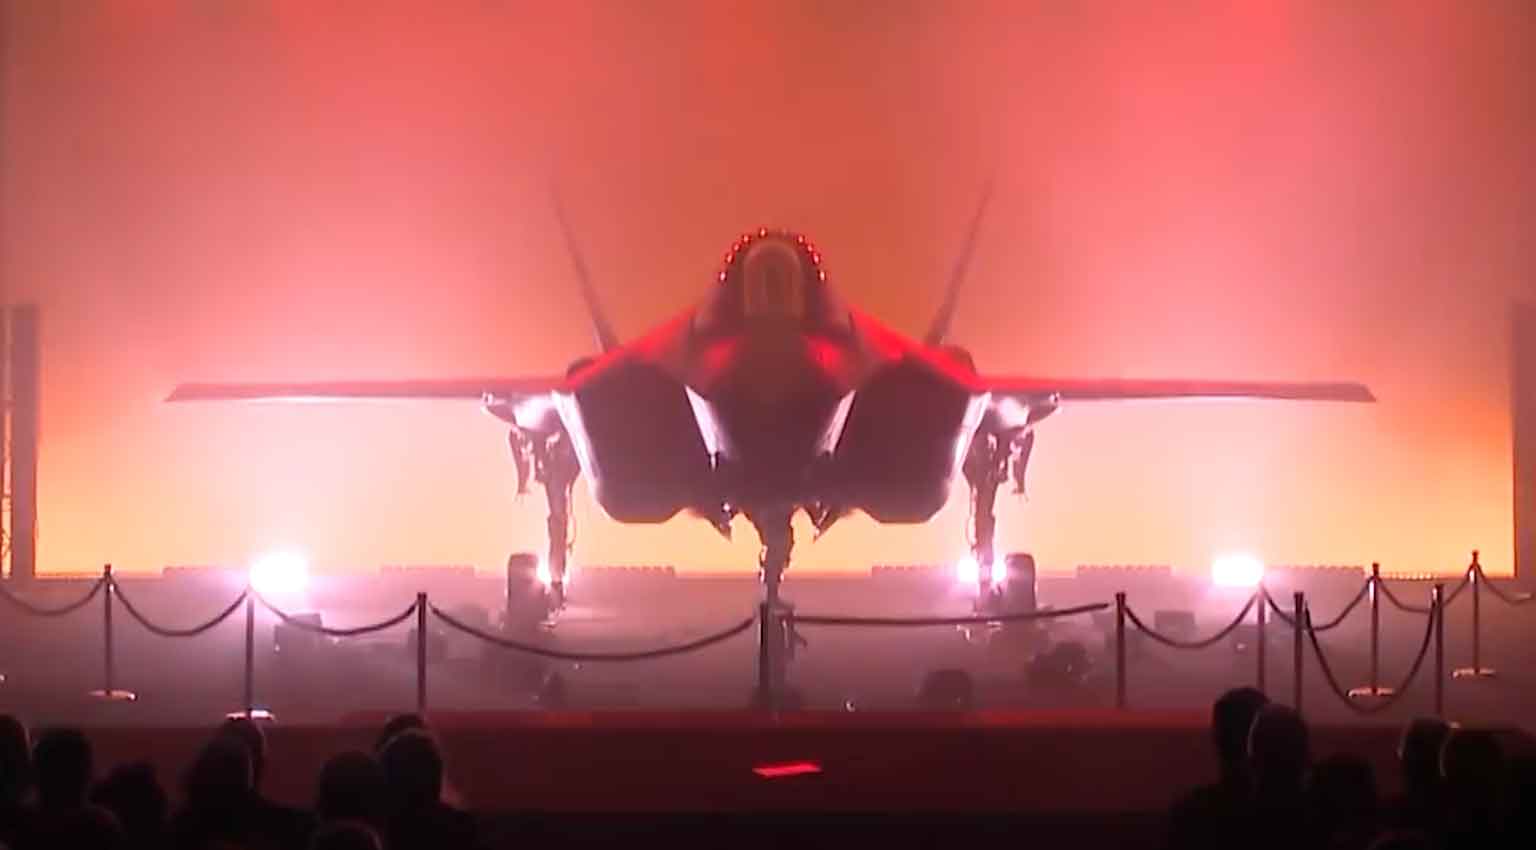 Videó: Belgium első F-35A repülőgépét a Lockheed Martin mutatta be. Fotó és videó: Instagram @lockheedmartin